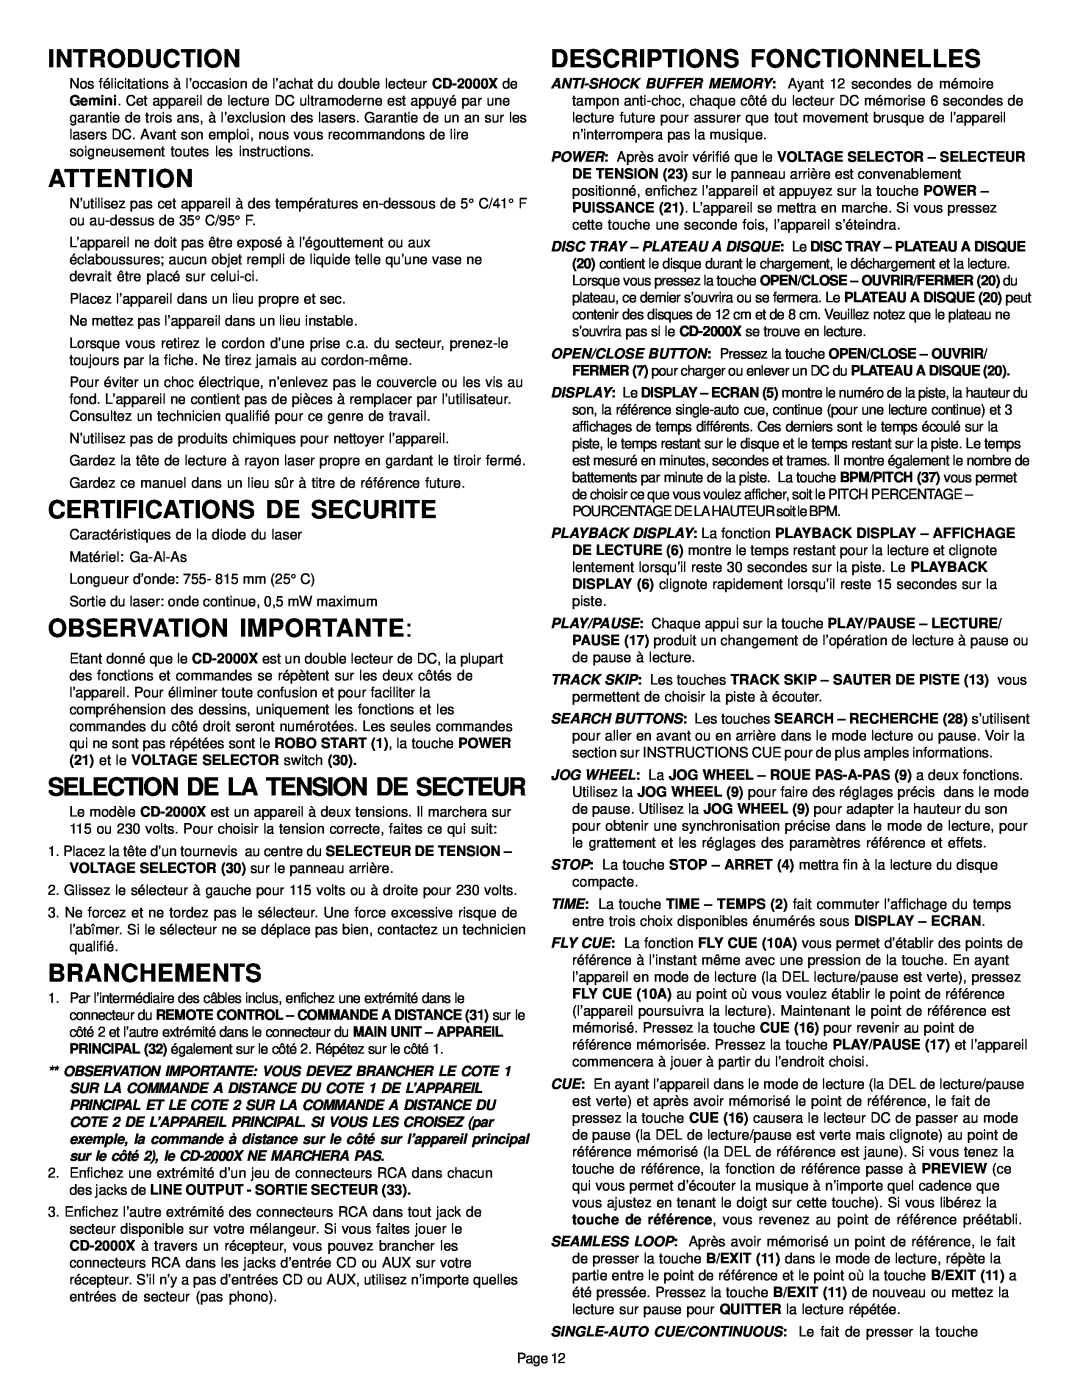 Gemini CD-2000X manual Descriptions Fonctionnelles, Certifications De Securite, Observation Importante, Branchements 